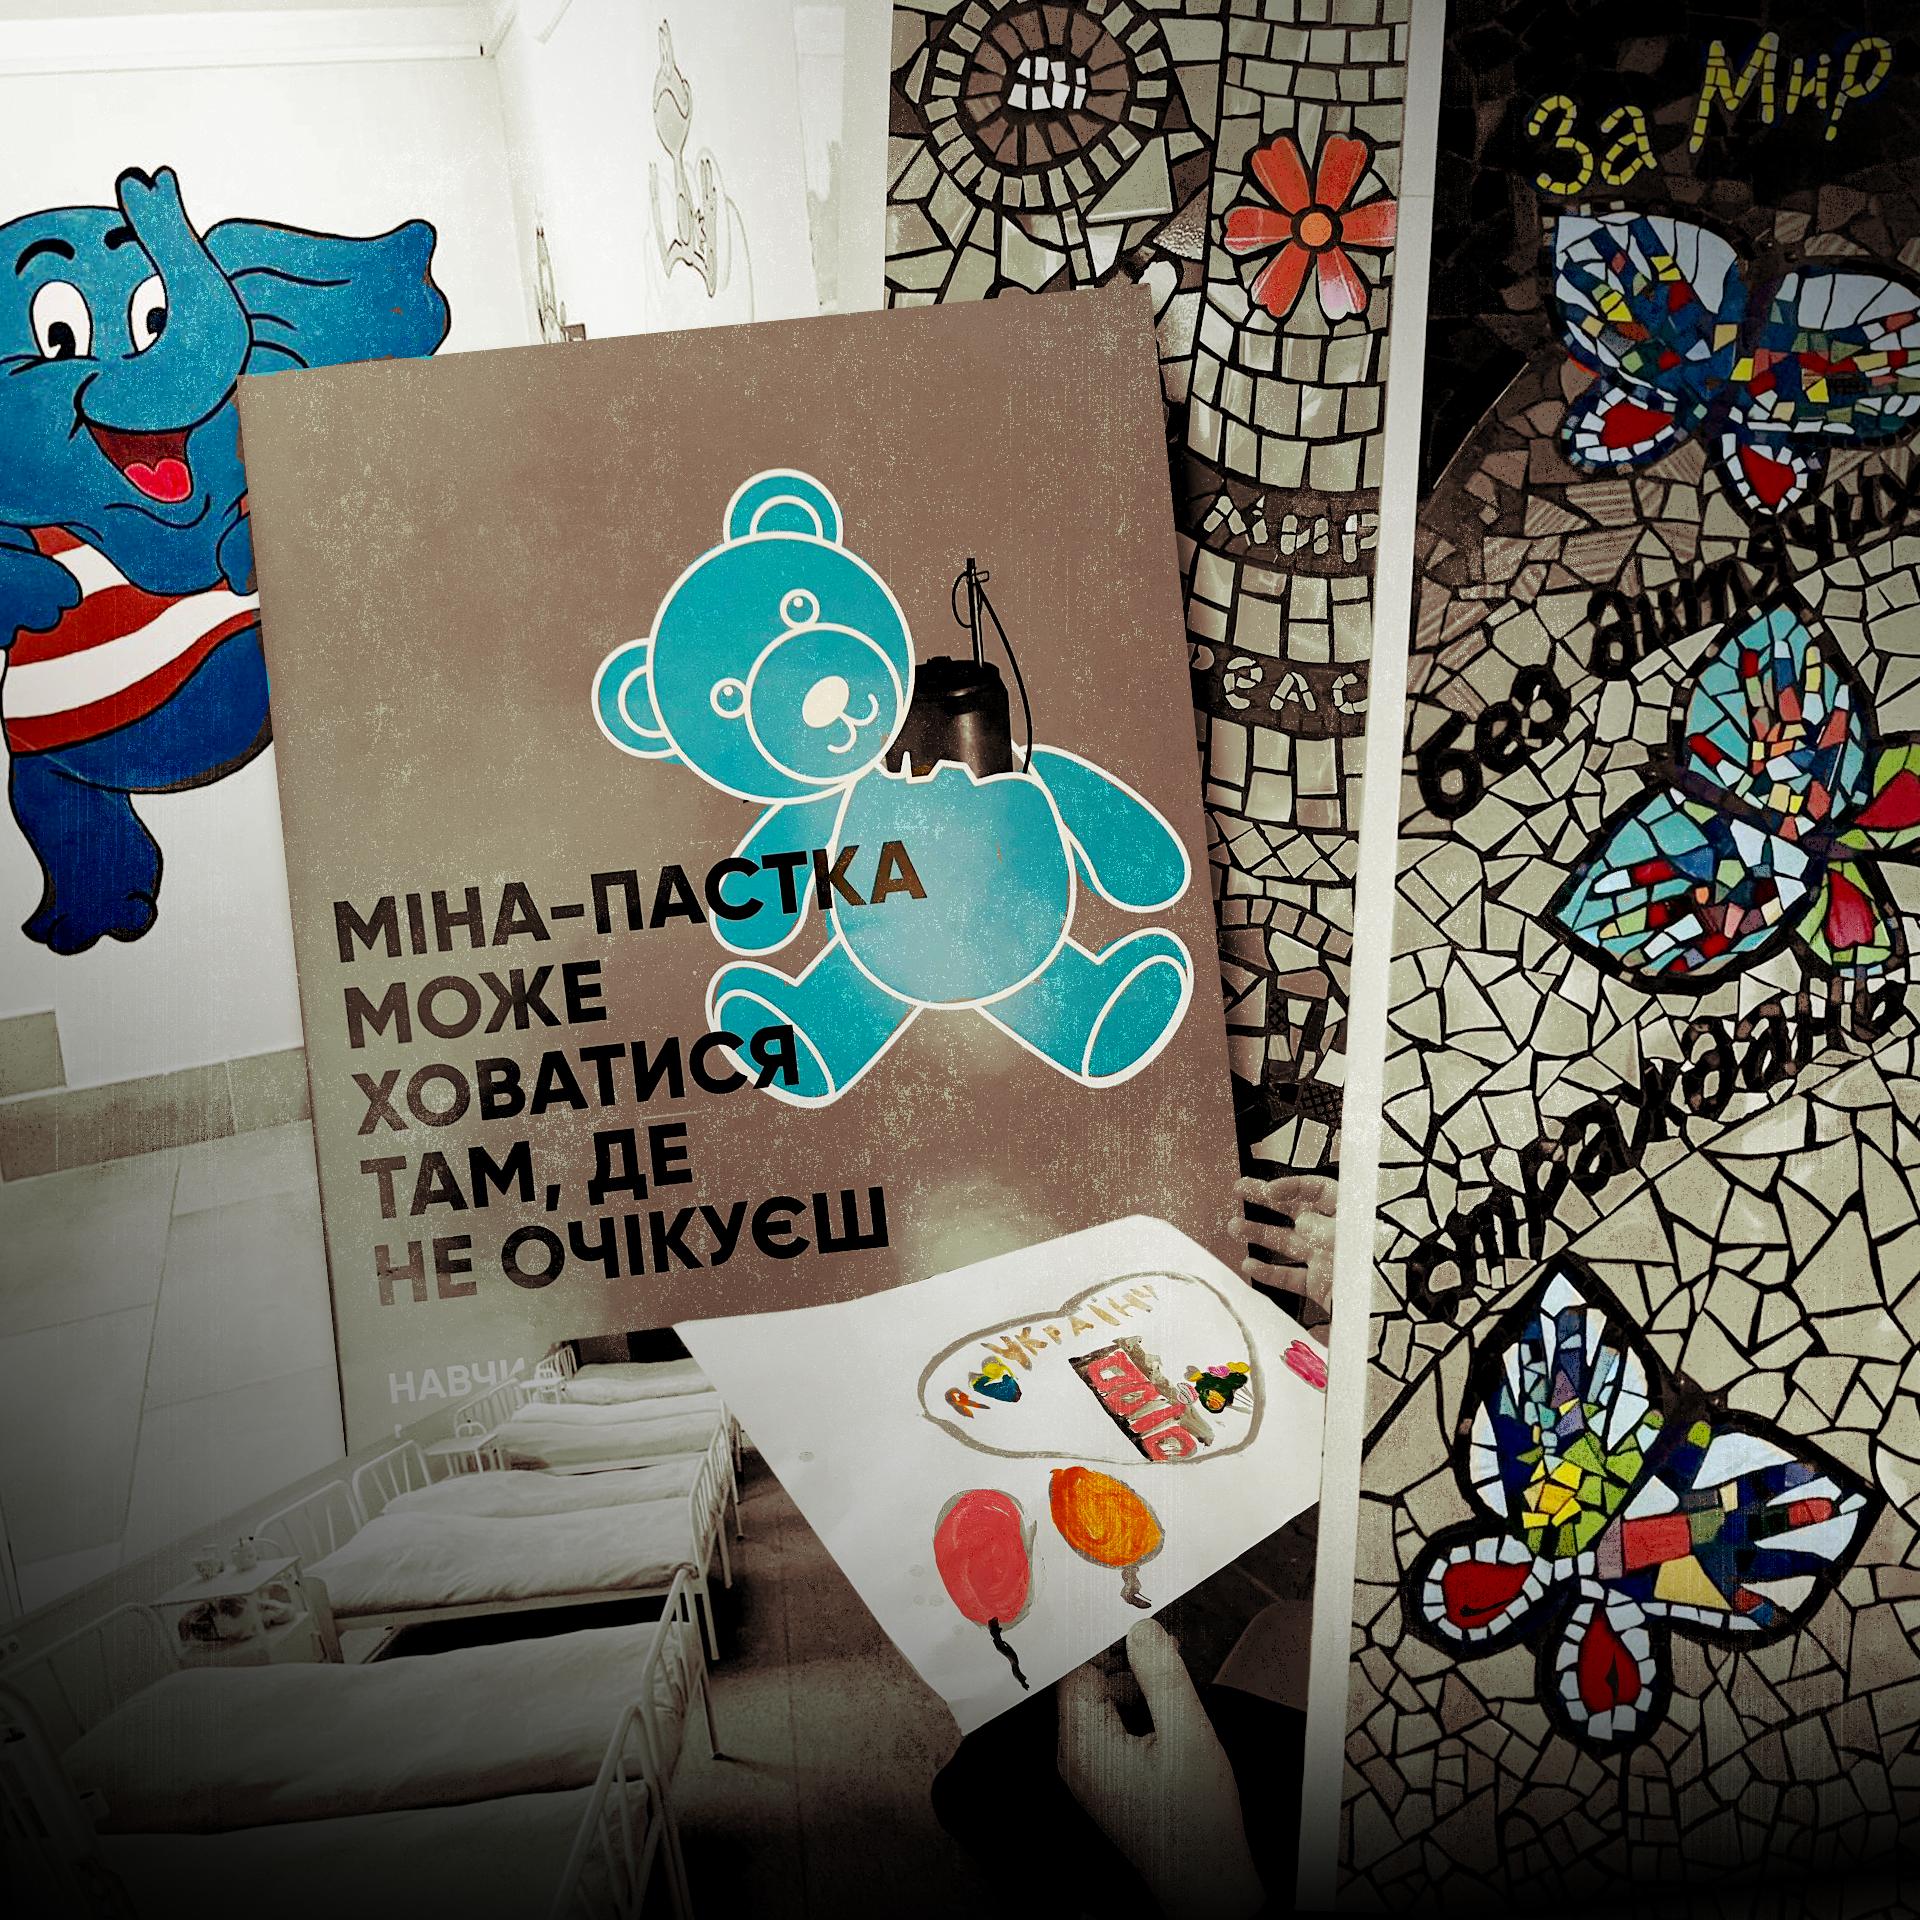 Kolaż zdjęć pokazujących m.in. łóżka szpitalne, podziemny schron, mozaikę z napisem po ukraińsku "Za pokój", na pierwszym planie plakat ostrzegający przed bombami ukrytymi w zabawkach dla dzieci, na plakacie bomba wystaje z sympatycznego pluszowego misia. Dzieci z Ukrainy.